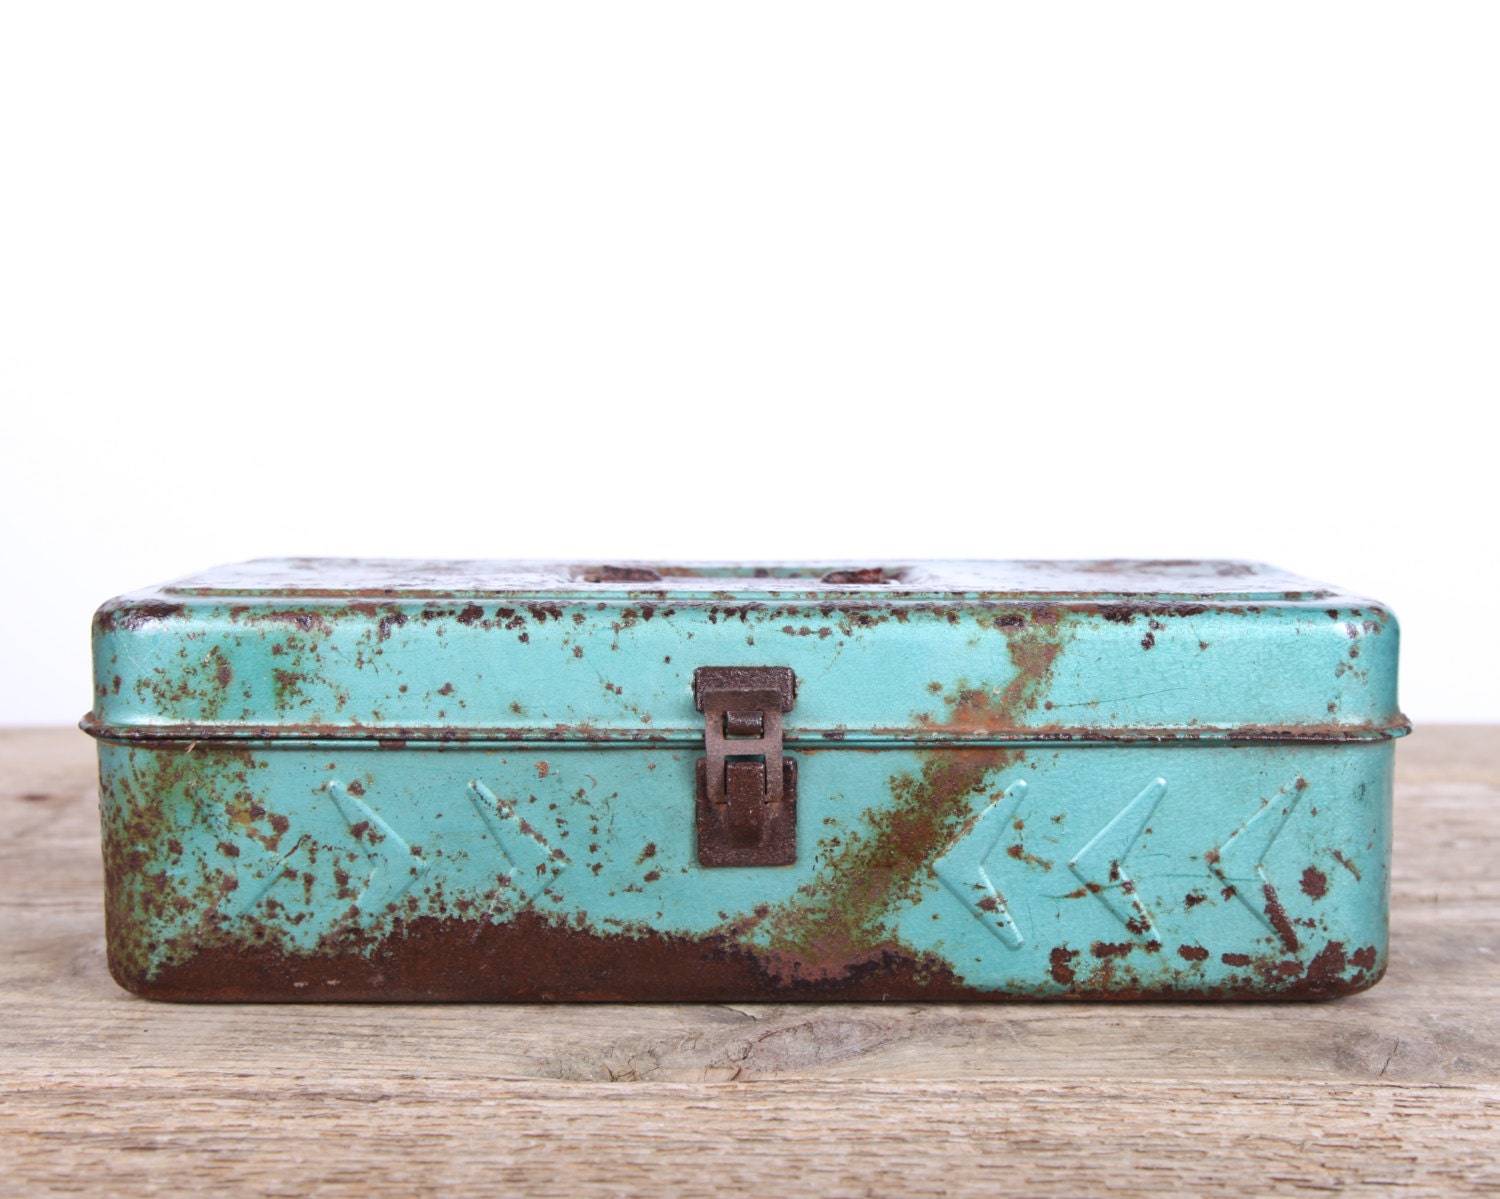 Vintage Metal Tackle Box / Blue-Green Tackle Box / Fishing Box